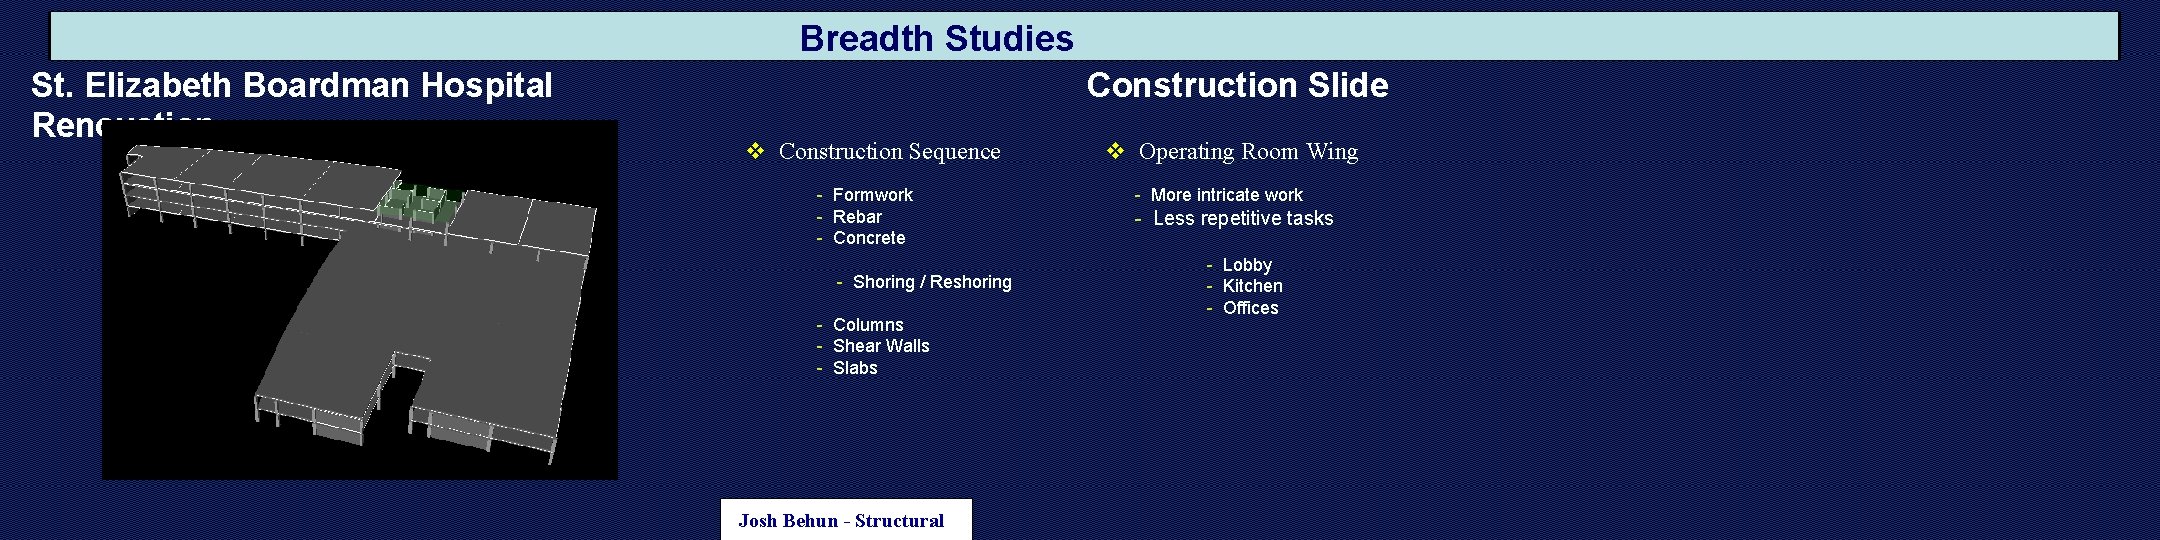 Breadth Studies St. Elizabeth Boardman Hospital Renovation Construction Slide v Construction Sequence - Formwork